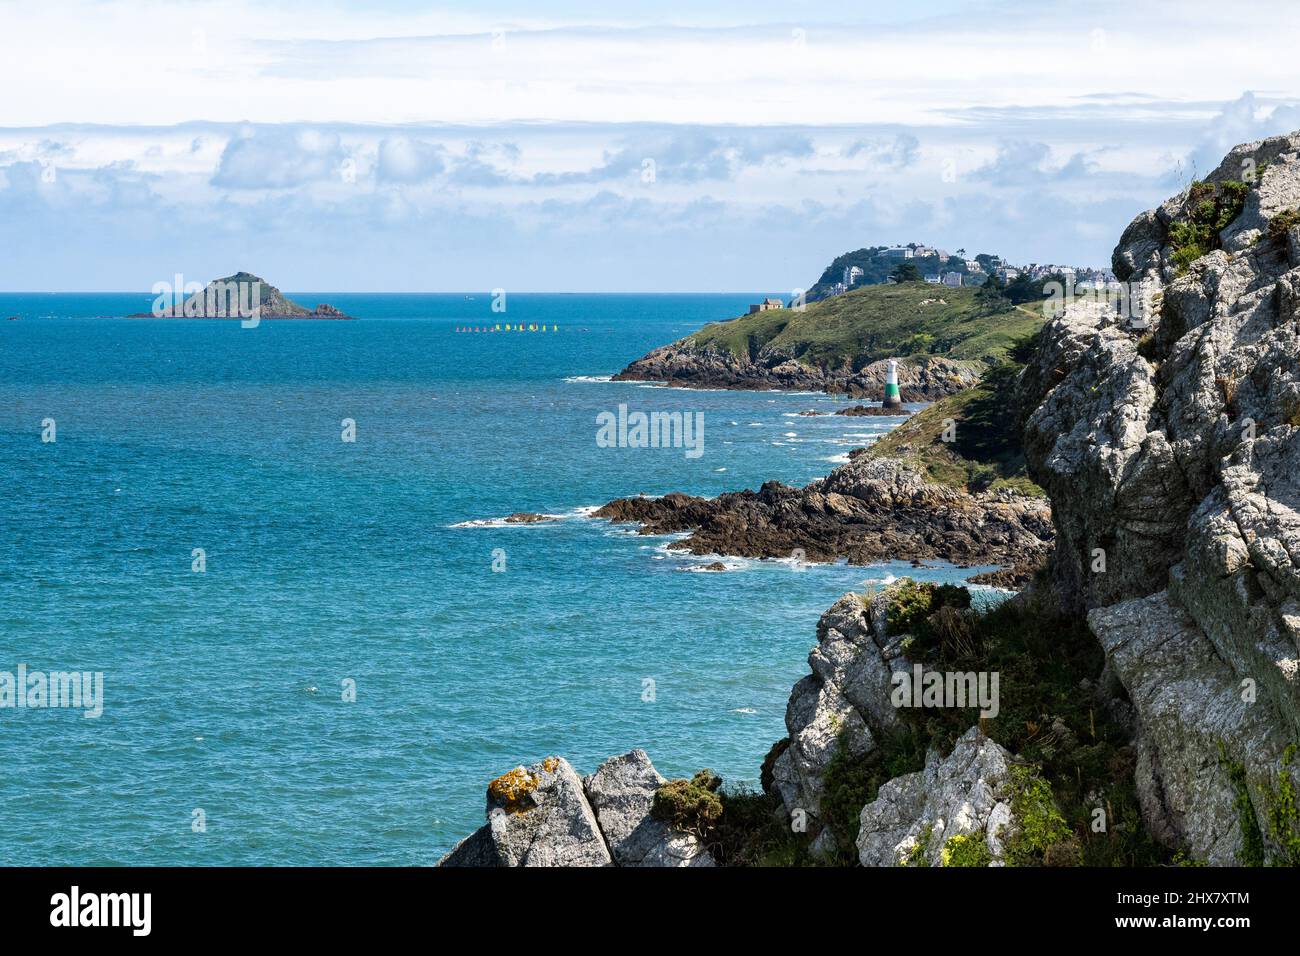 Des falaises gardées de verdure tombent précipitamment dans l'Atlantique bleu fort brillant dans le nord de la Bretagne.de petits voiliers flottent au soleil sur la mer. Banque D'Images